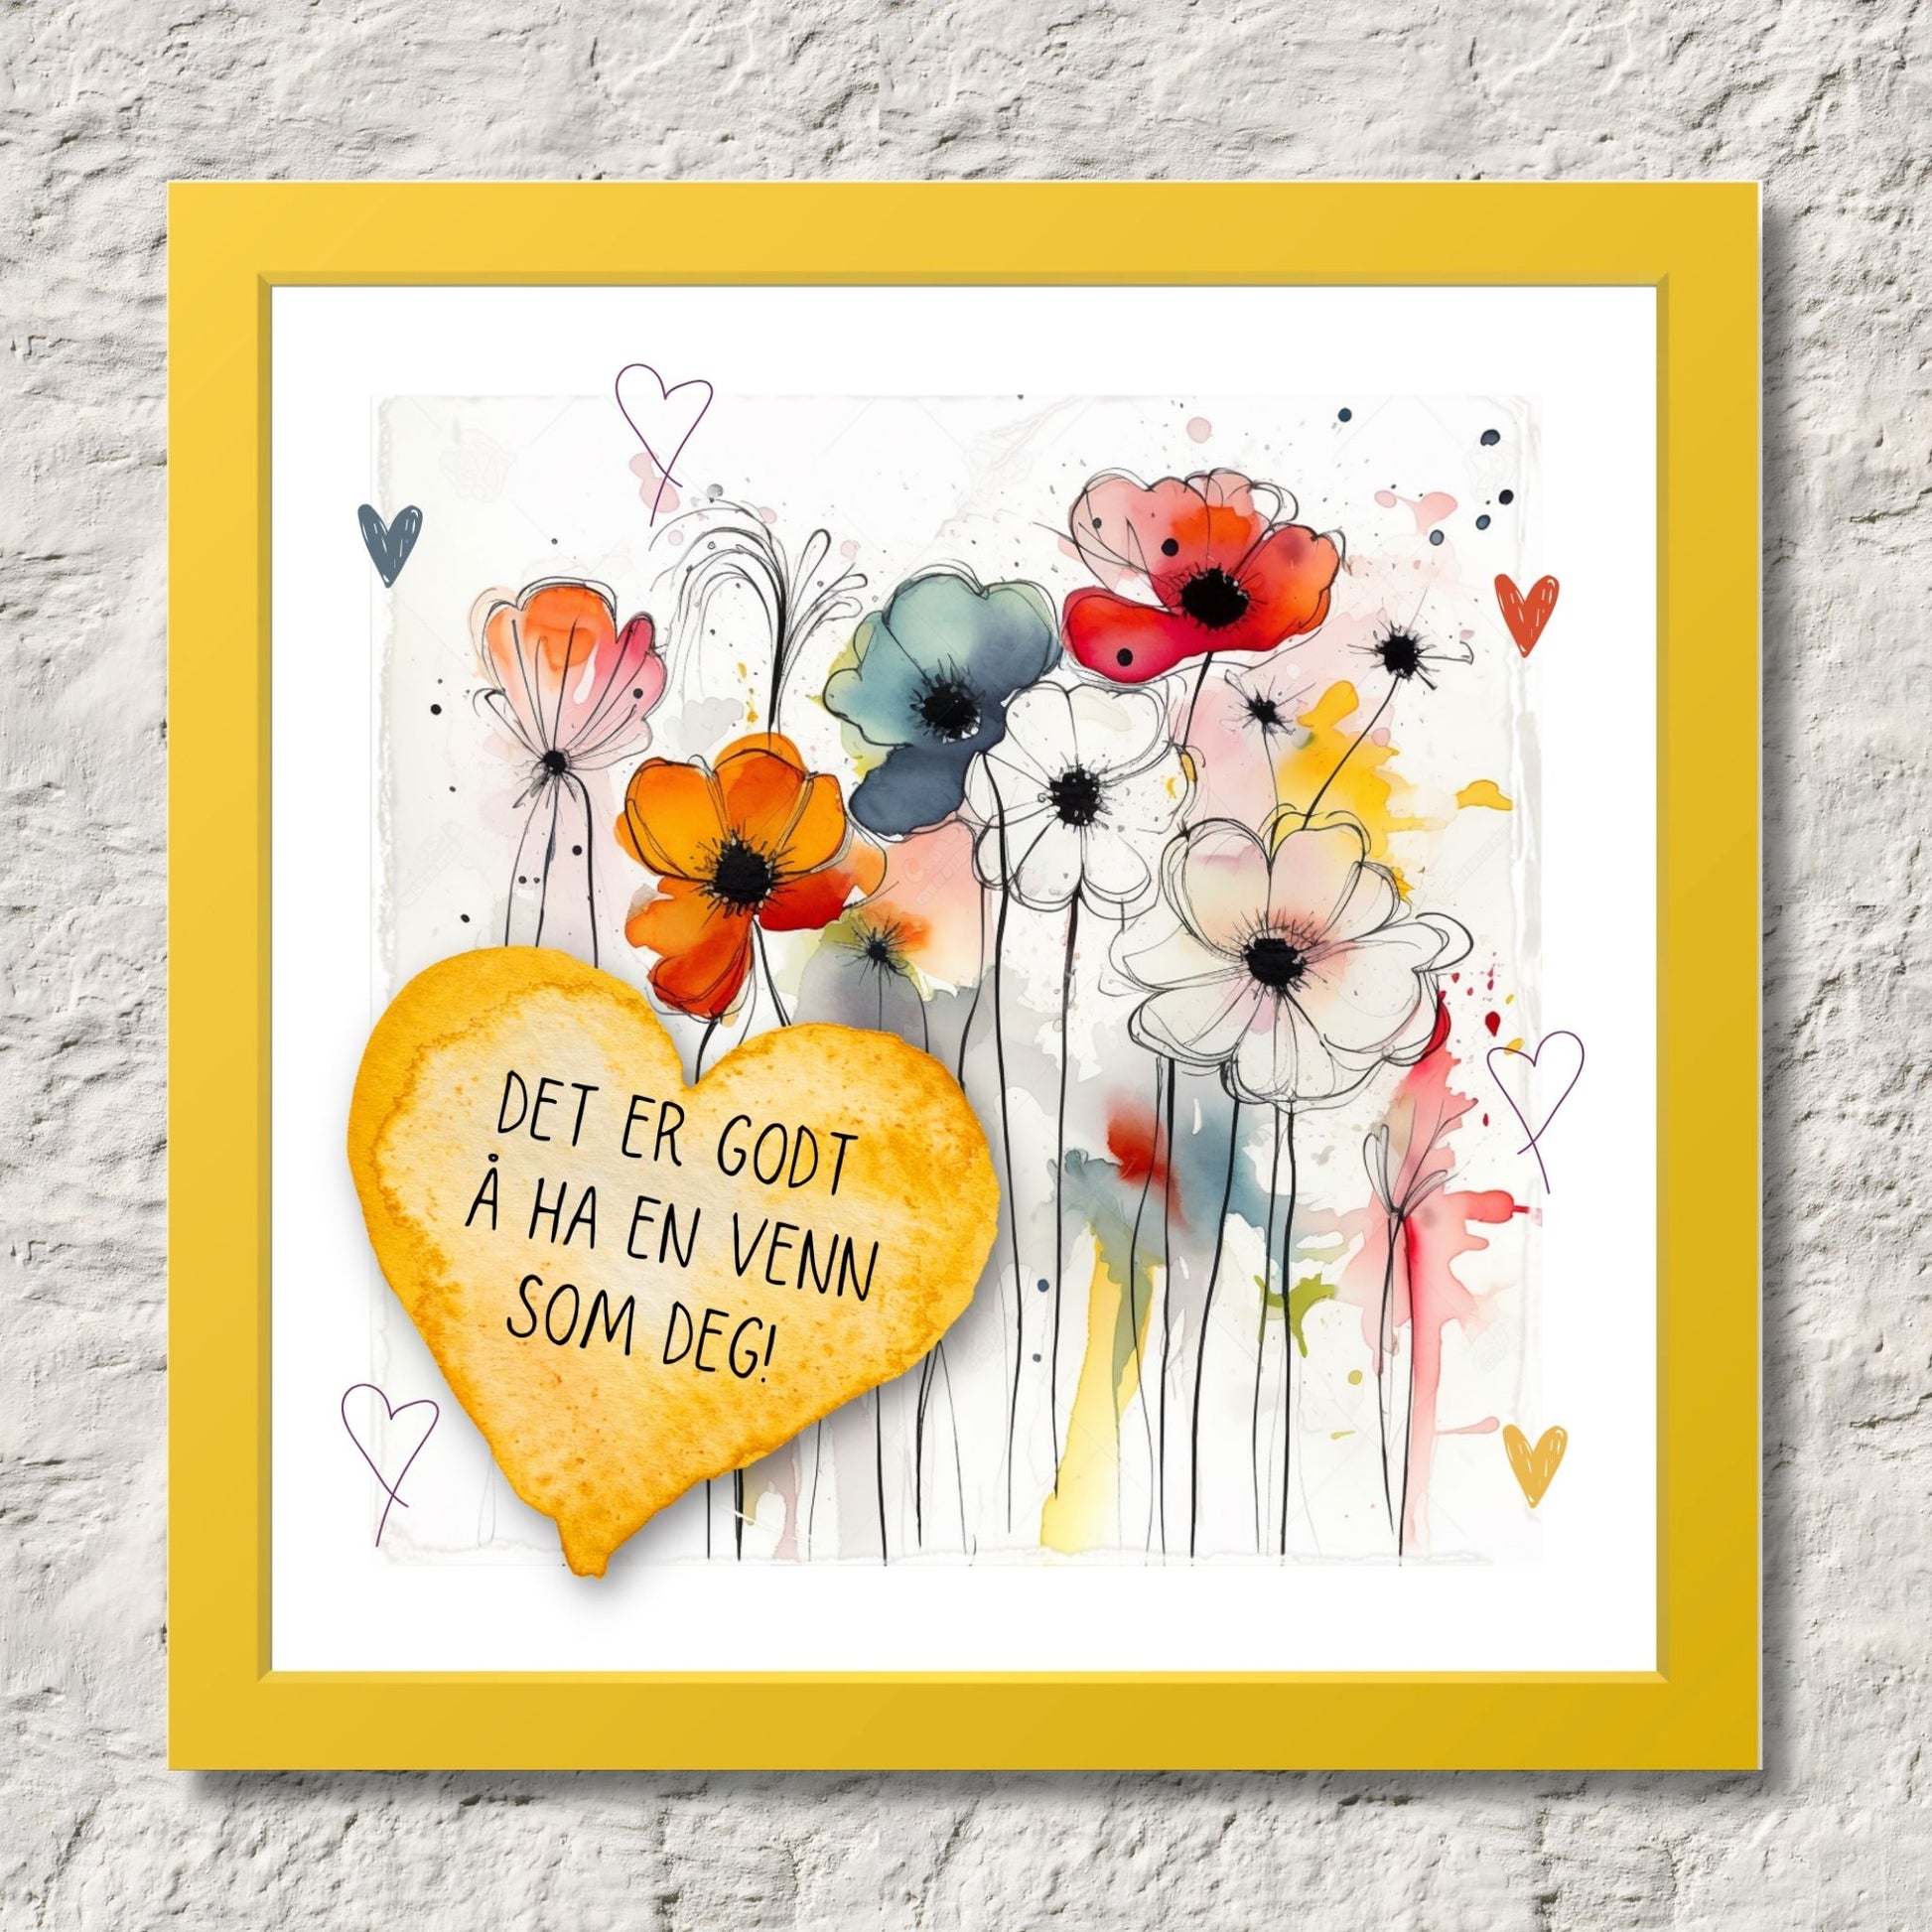 Plakat med lysegult hjerte og tekst "Det er godt å ha en venn som deg" - og et motiv med blomster i gul, rød, hvit, blå og oransje. Med hvit kant på 1,5 cm. Illustrasjon viser plakat i gul ramme.